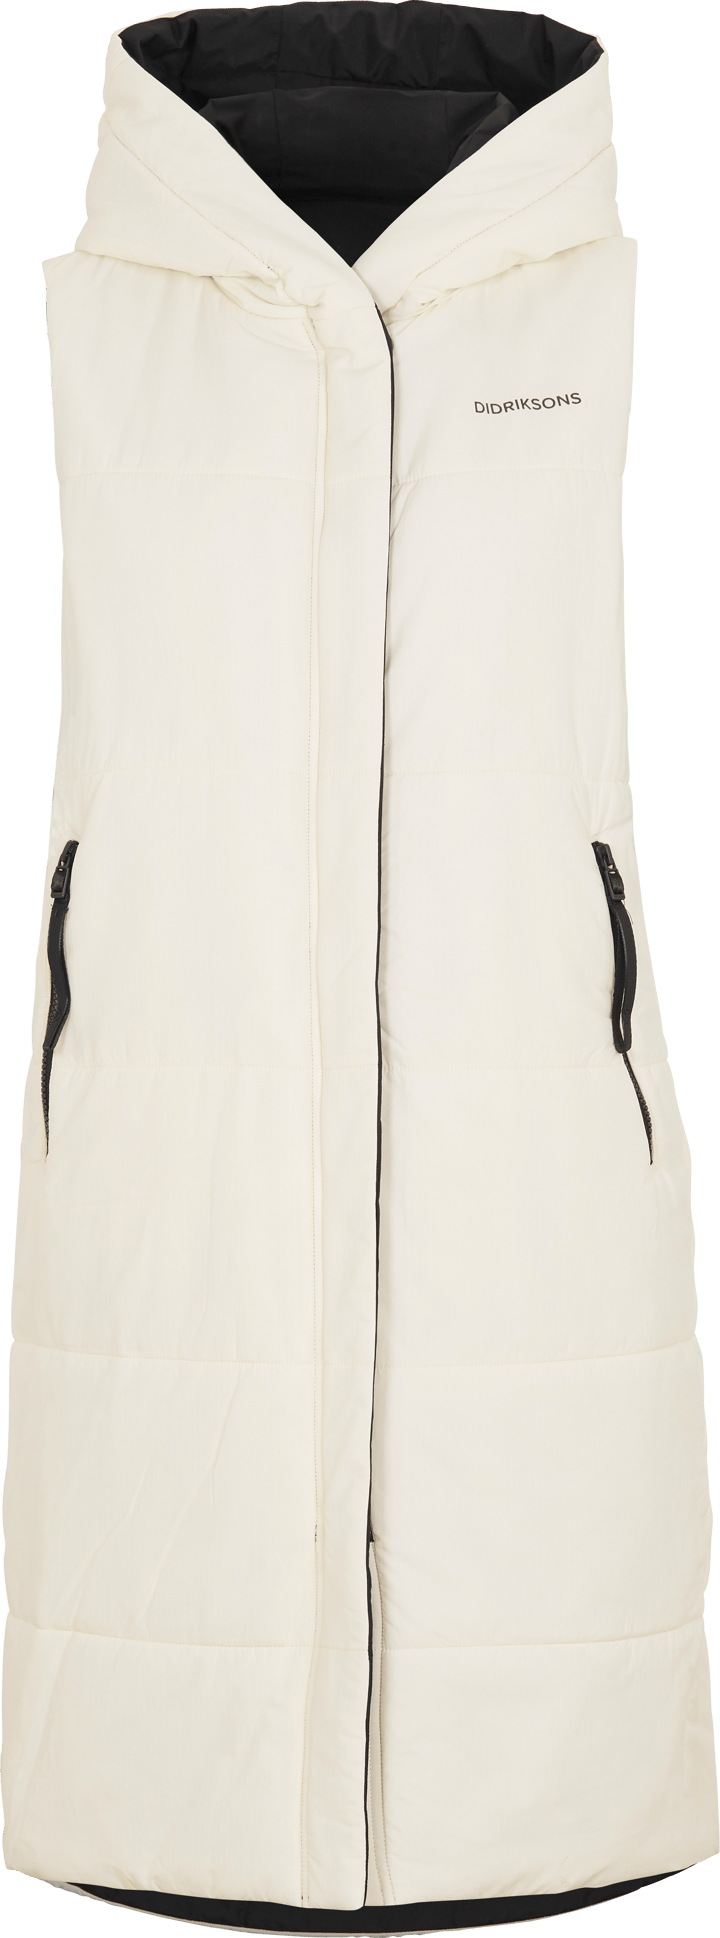 Aviva Reversible Women's Vest White Foam/Black Didriksons